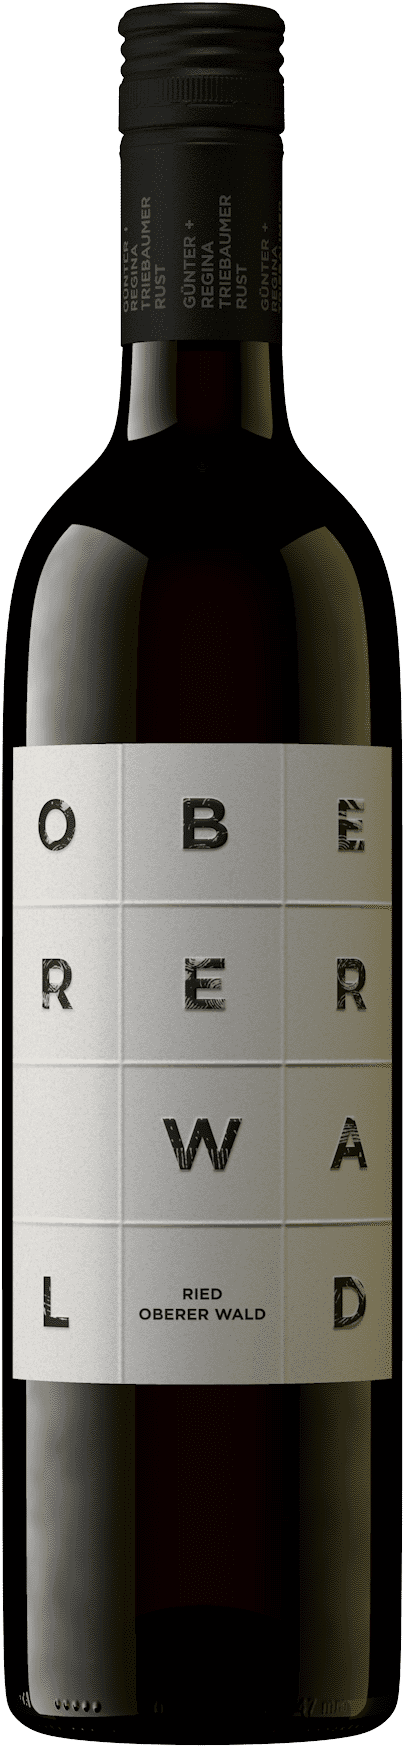 2018 Ried Oberer Wald Qualitätswein 0.75l